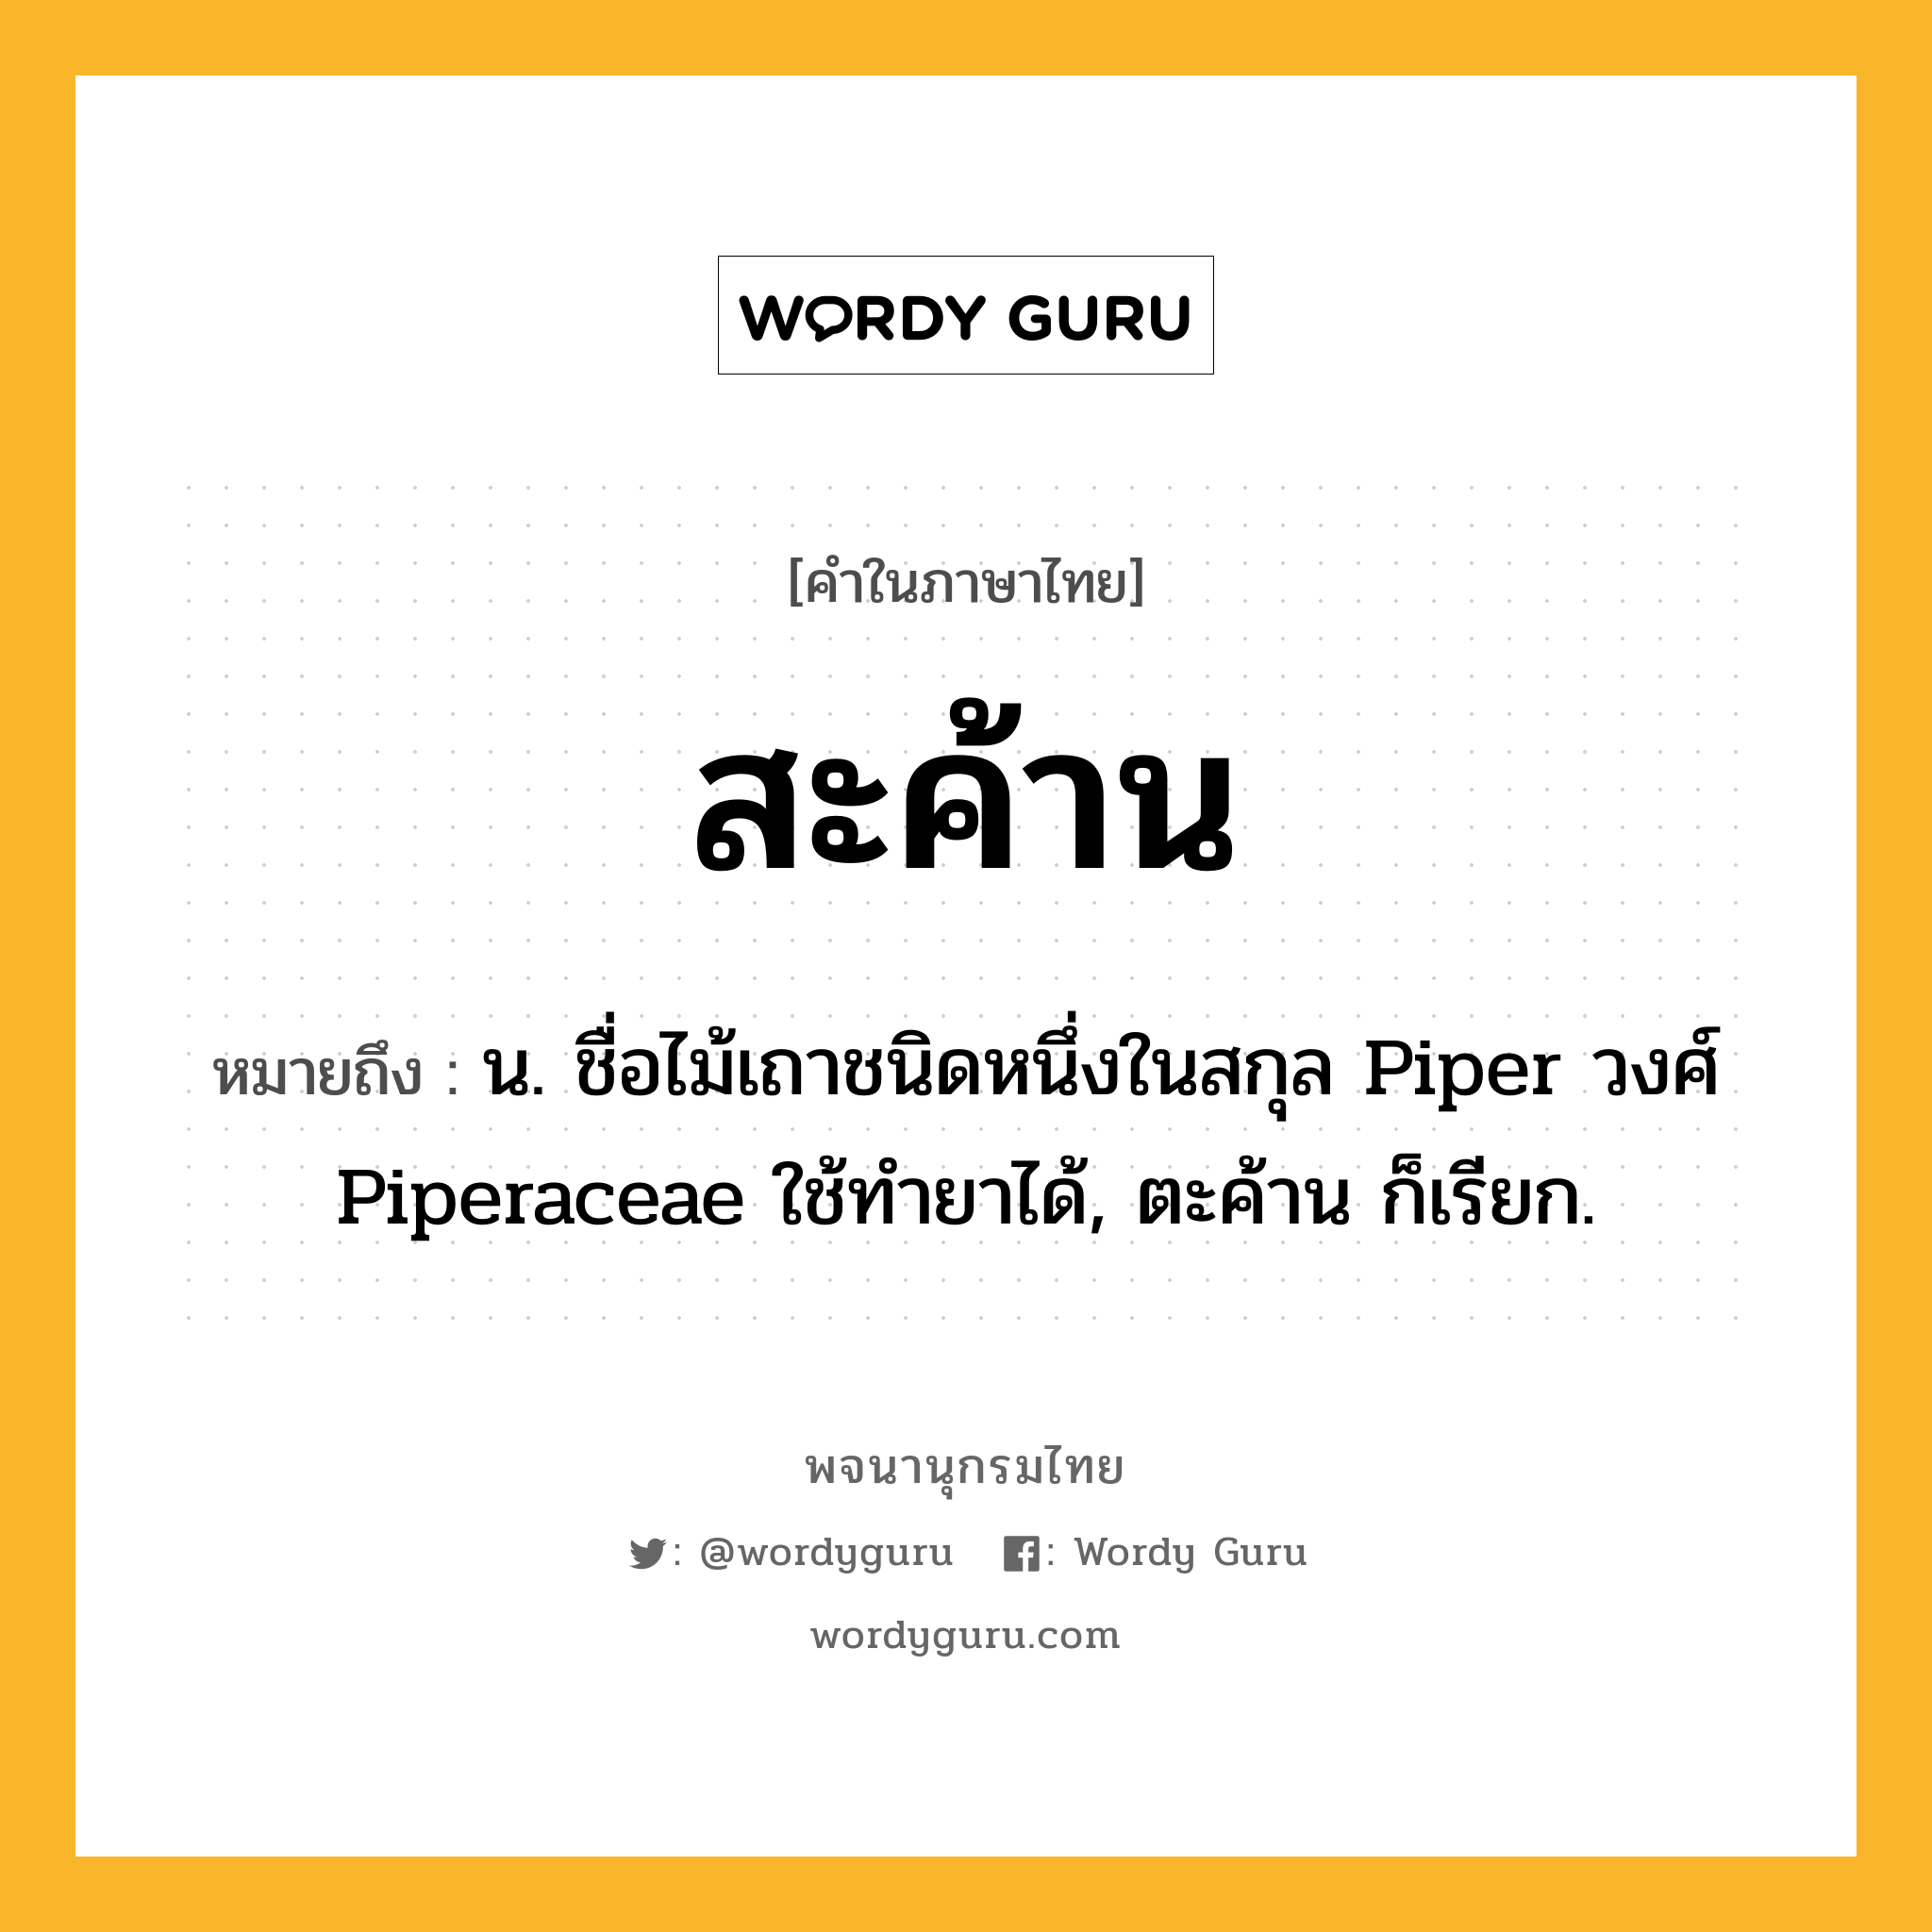 สะค้าน ความหมาย หมายถึงอะไร?, คำในภาษาไทย สะค้าน หมายถึง น. ชื่อไม้เถาชนิดหนึ่งในสกุล Piper วงศ์ Piperaceae ใช้ทํายาได้, ตะค้าน ก็เรียก.